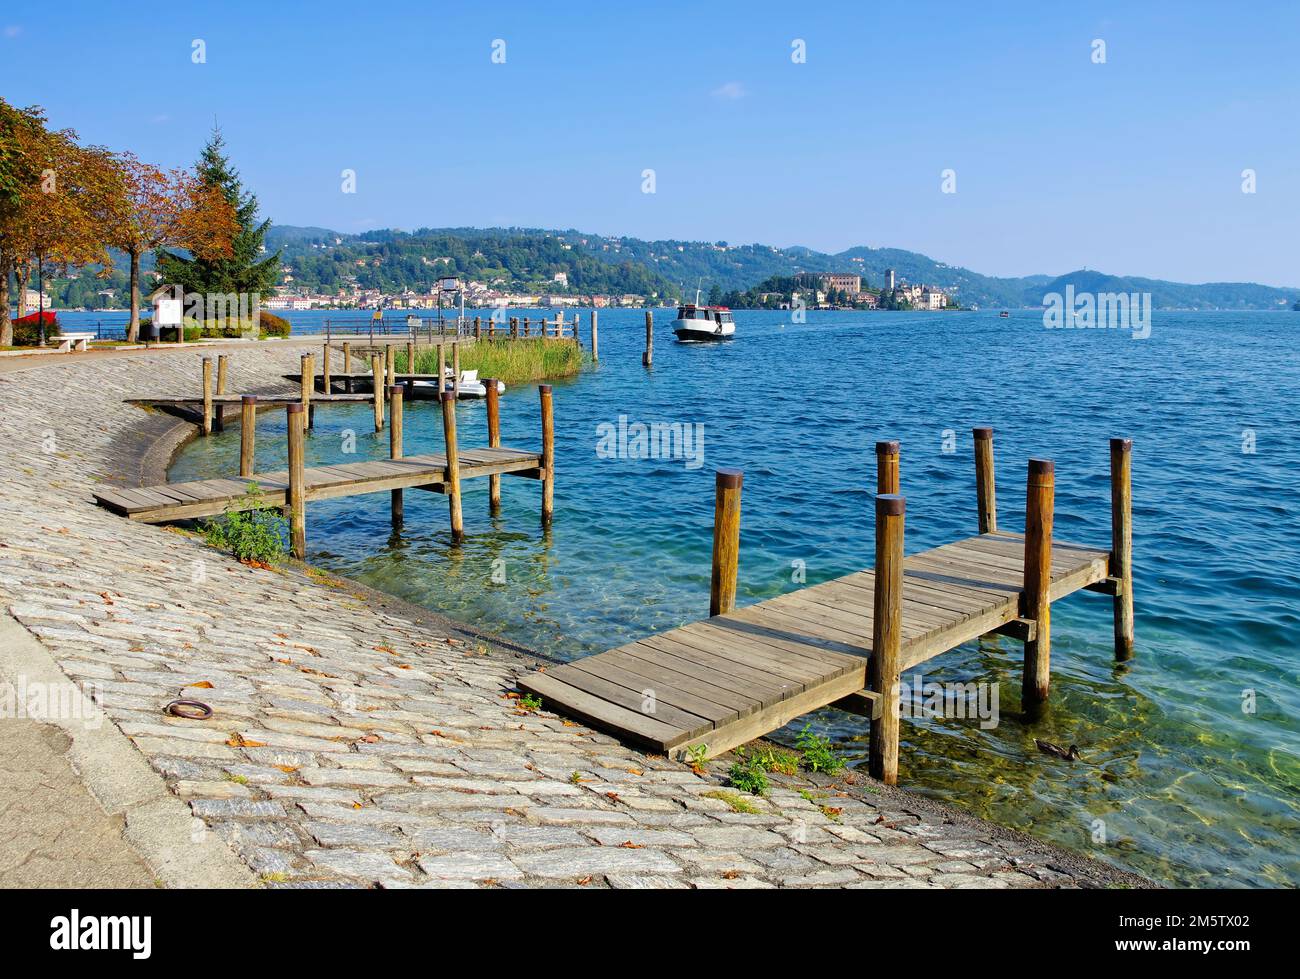 Pella, sur la rive du lac Orta en Italie Banque D'Images